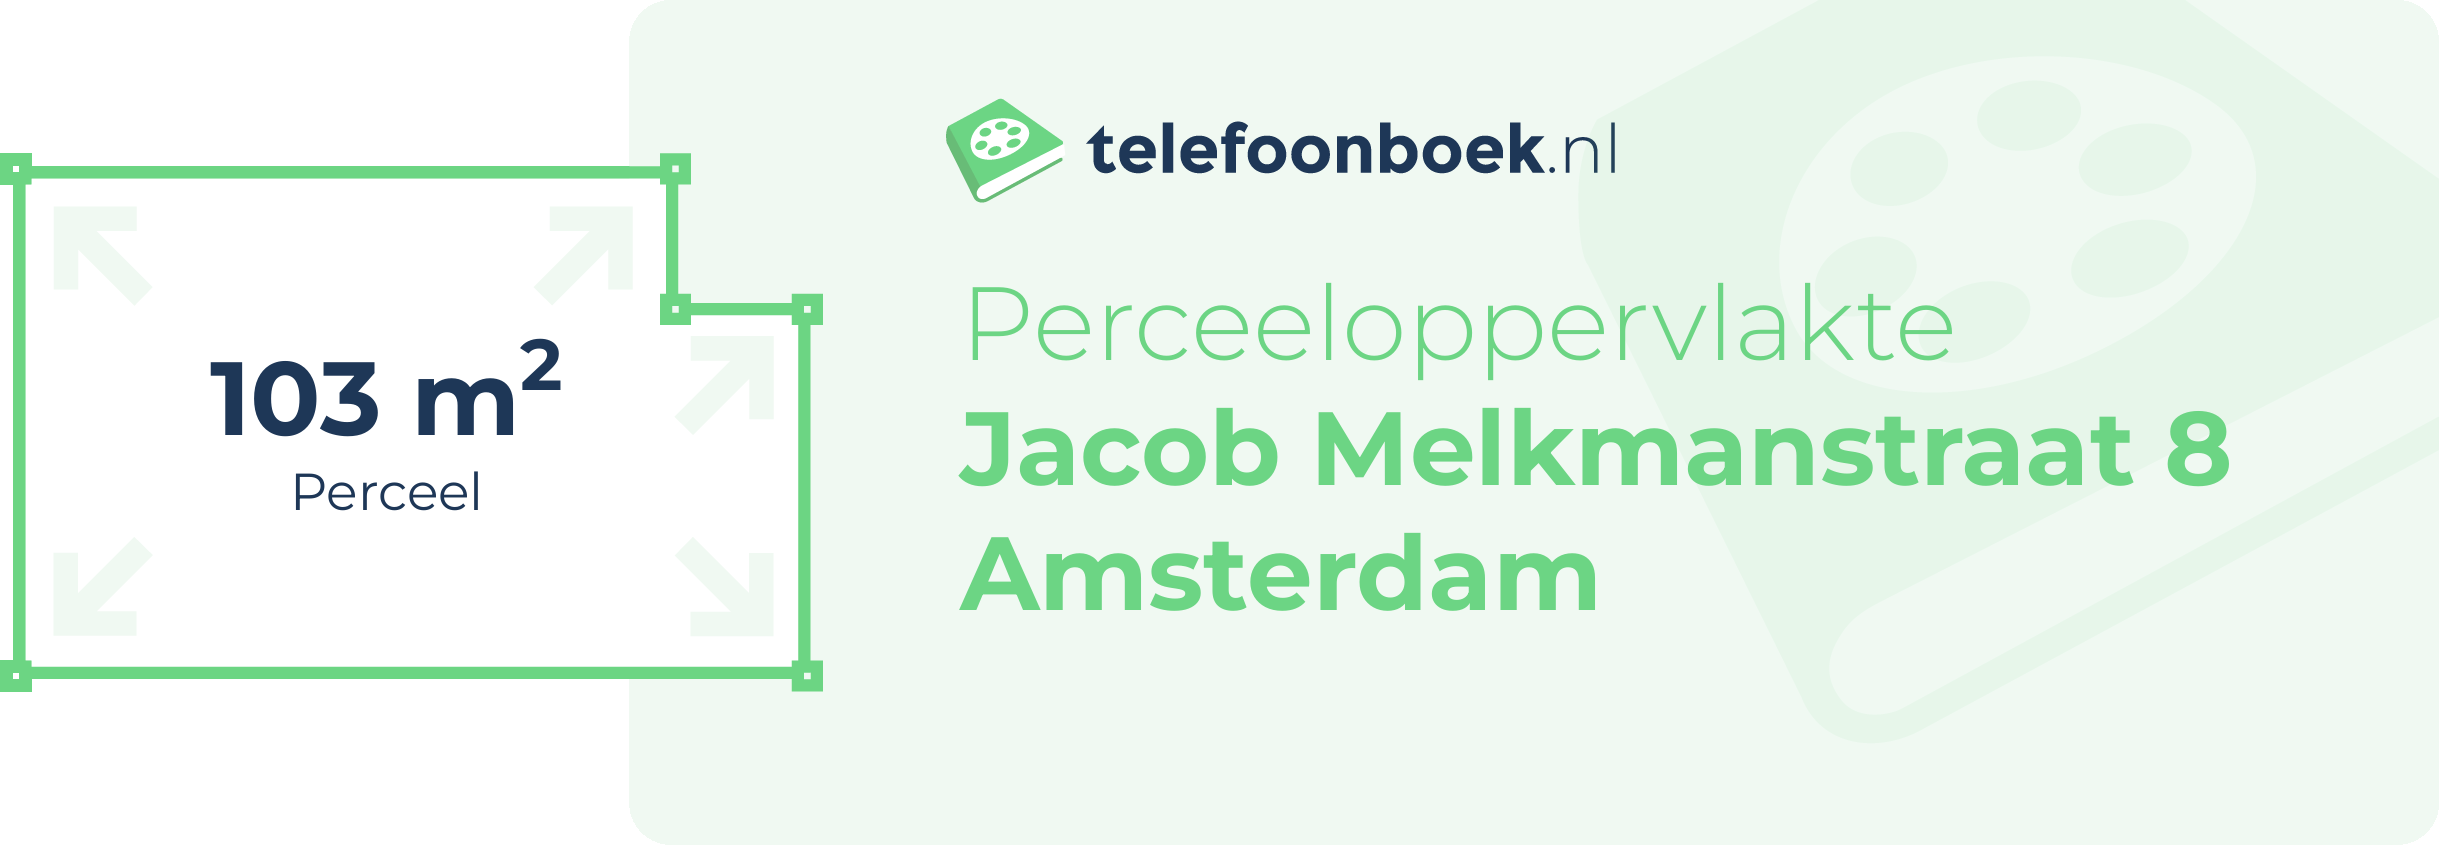 Perceeloppervlakte Jacob Melkmanstraat 8 Amsterdam